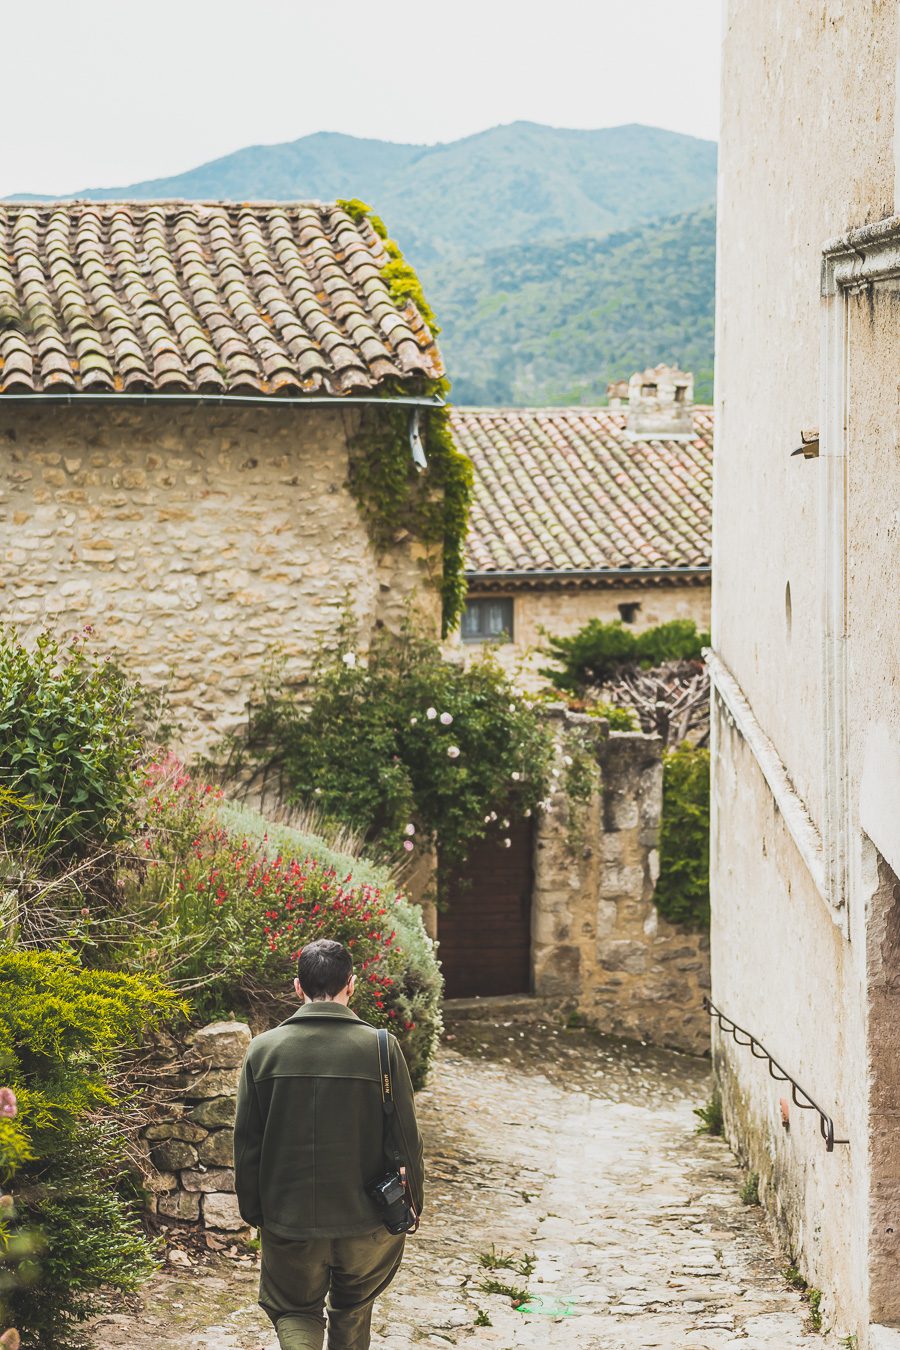 Face à la beauté spectaculaire de la campagne, la Drôme Provençale est une région dynamique du sud de la France. Des marchés animés de Nyons aux villages de montagne de Crest, Buis les Baronnies et Grignan, en passant par les élégants villages de Valréas, Suze la Rousse et Saint-Paul-Trois-Chateaux, la région regorge de trésors culturels, de charmants hameaux et vignobles luxuriants. Partez à la découverte des plus beaux endroits de la Drôme provençale lors d'un road trip en van.